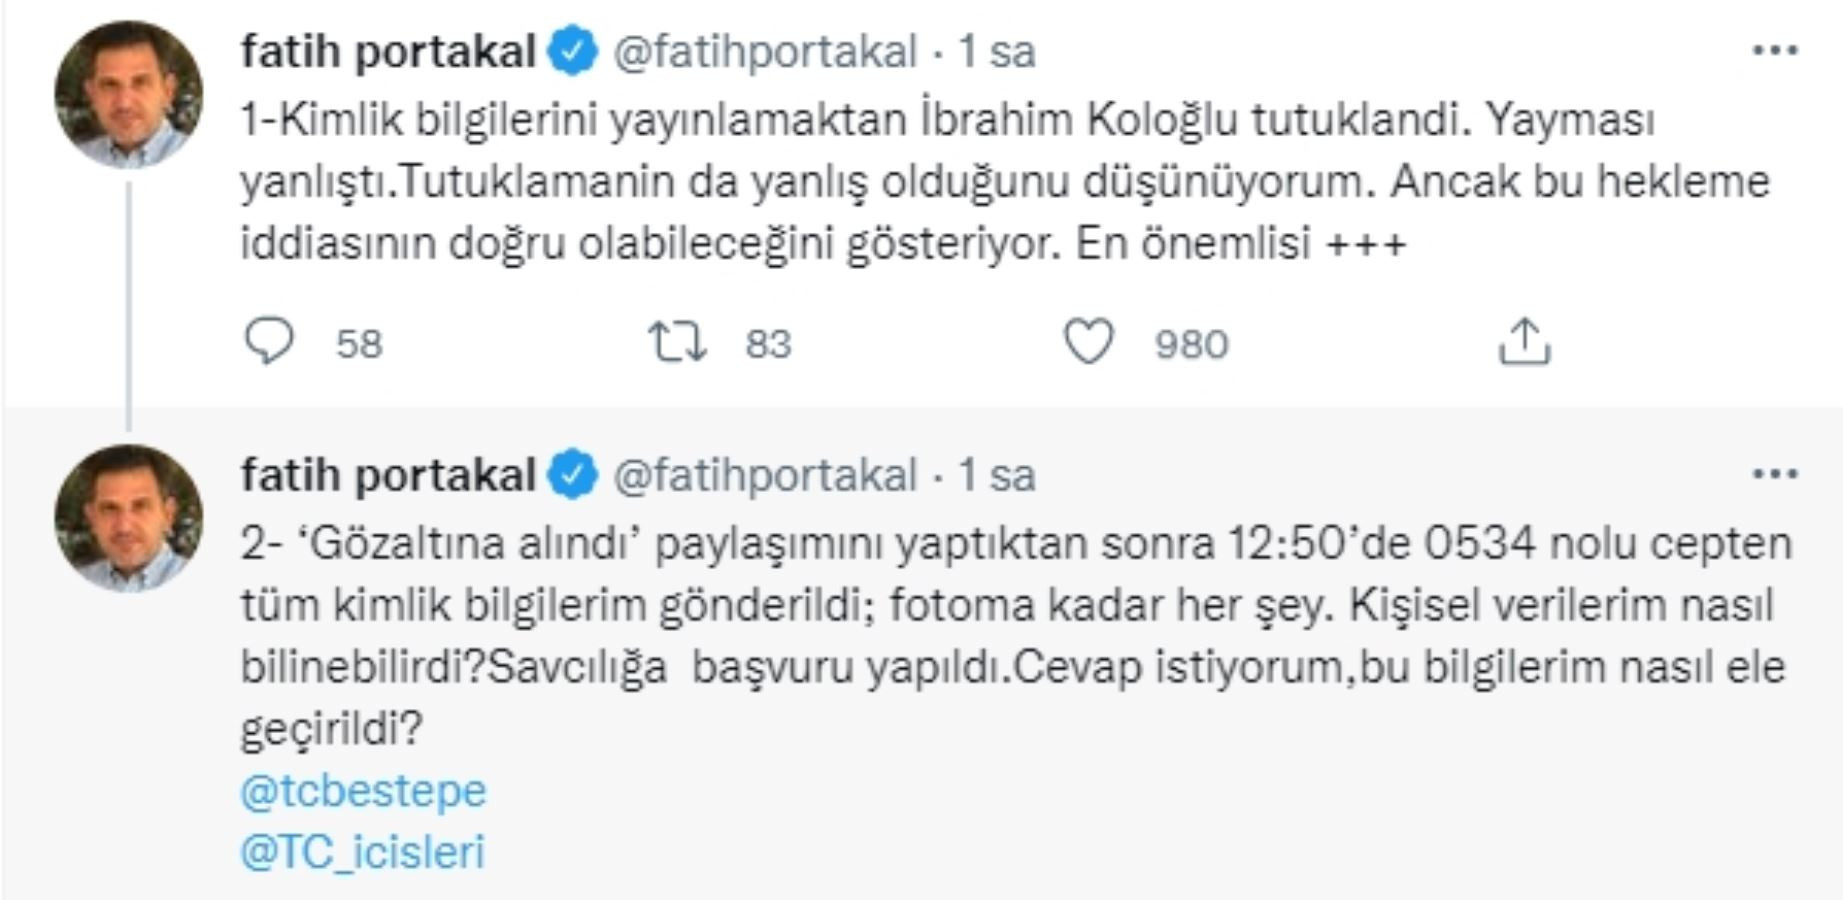 Fatih Portakal: Haskoloğlu Gözaltına Alındıktan Sonra Tüm Kimlik Bilgilerim Gönderildi - Resim: 1